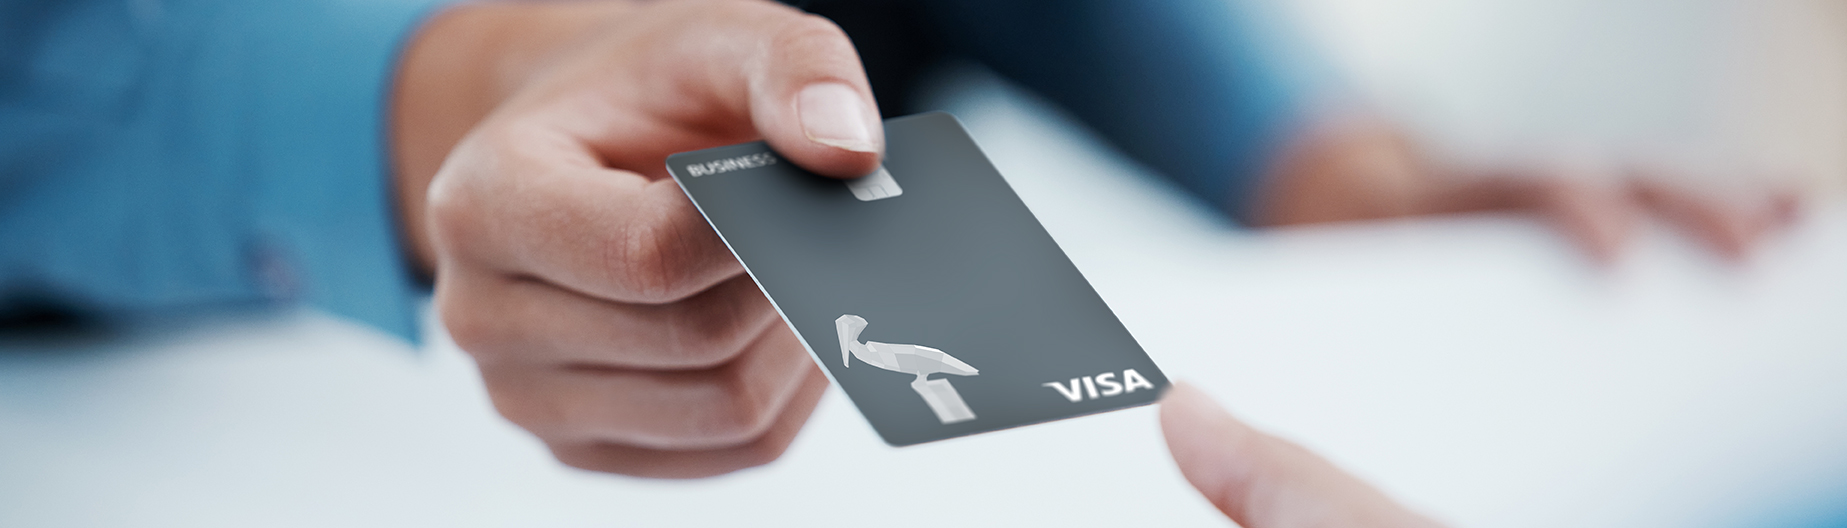 Pelican Business Visa Credit Card